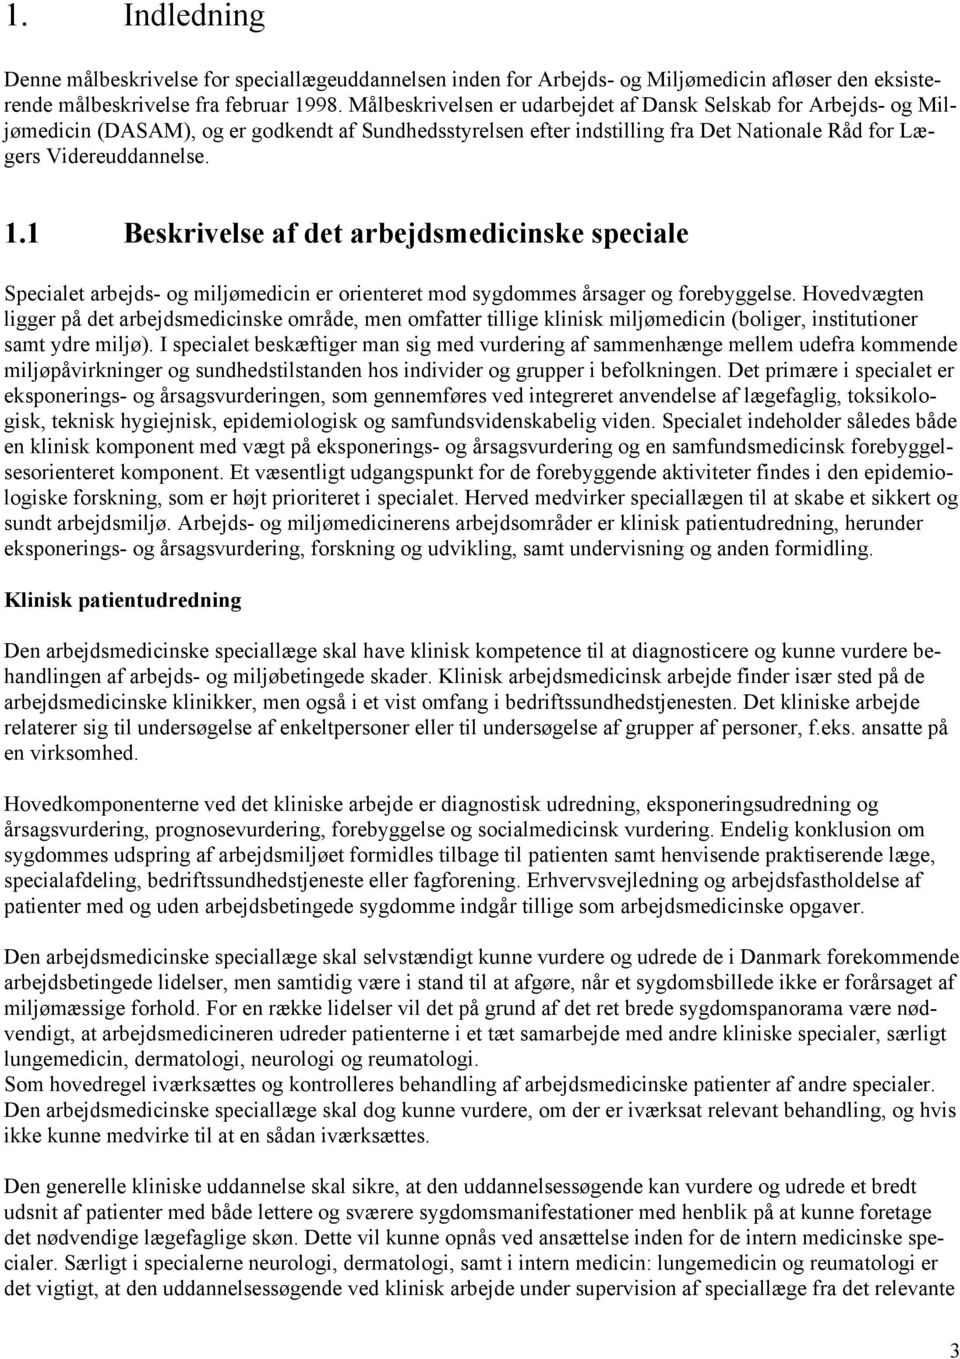 Målbeskrivelse for Speciallægeuddannelsen i Arbejds- og Miljømedicin - PDF  Free Download